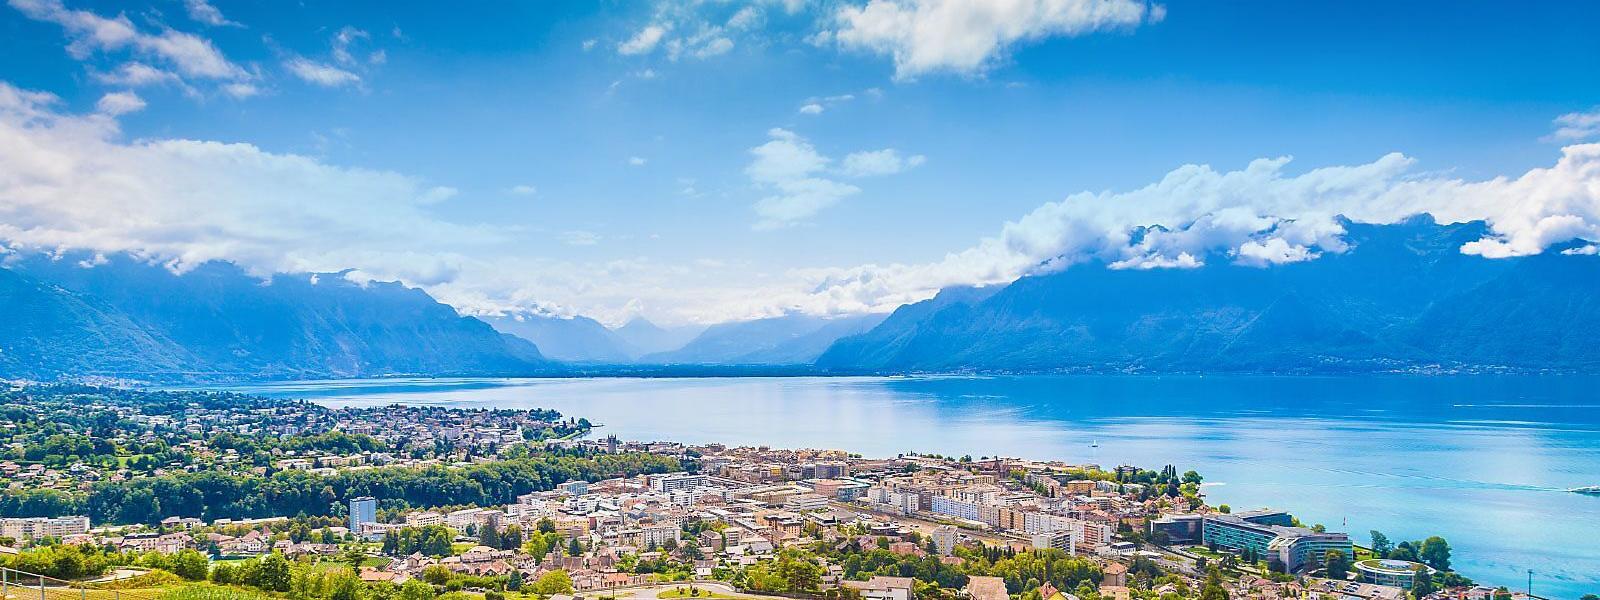 Ferienwohnung und Ferienhaus in Montreux - e-domizil